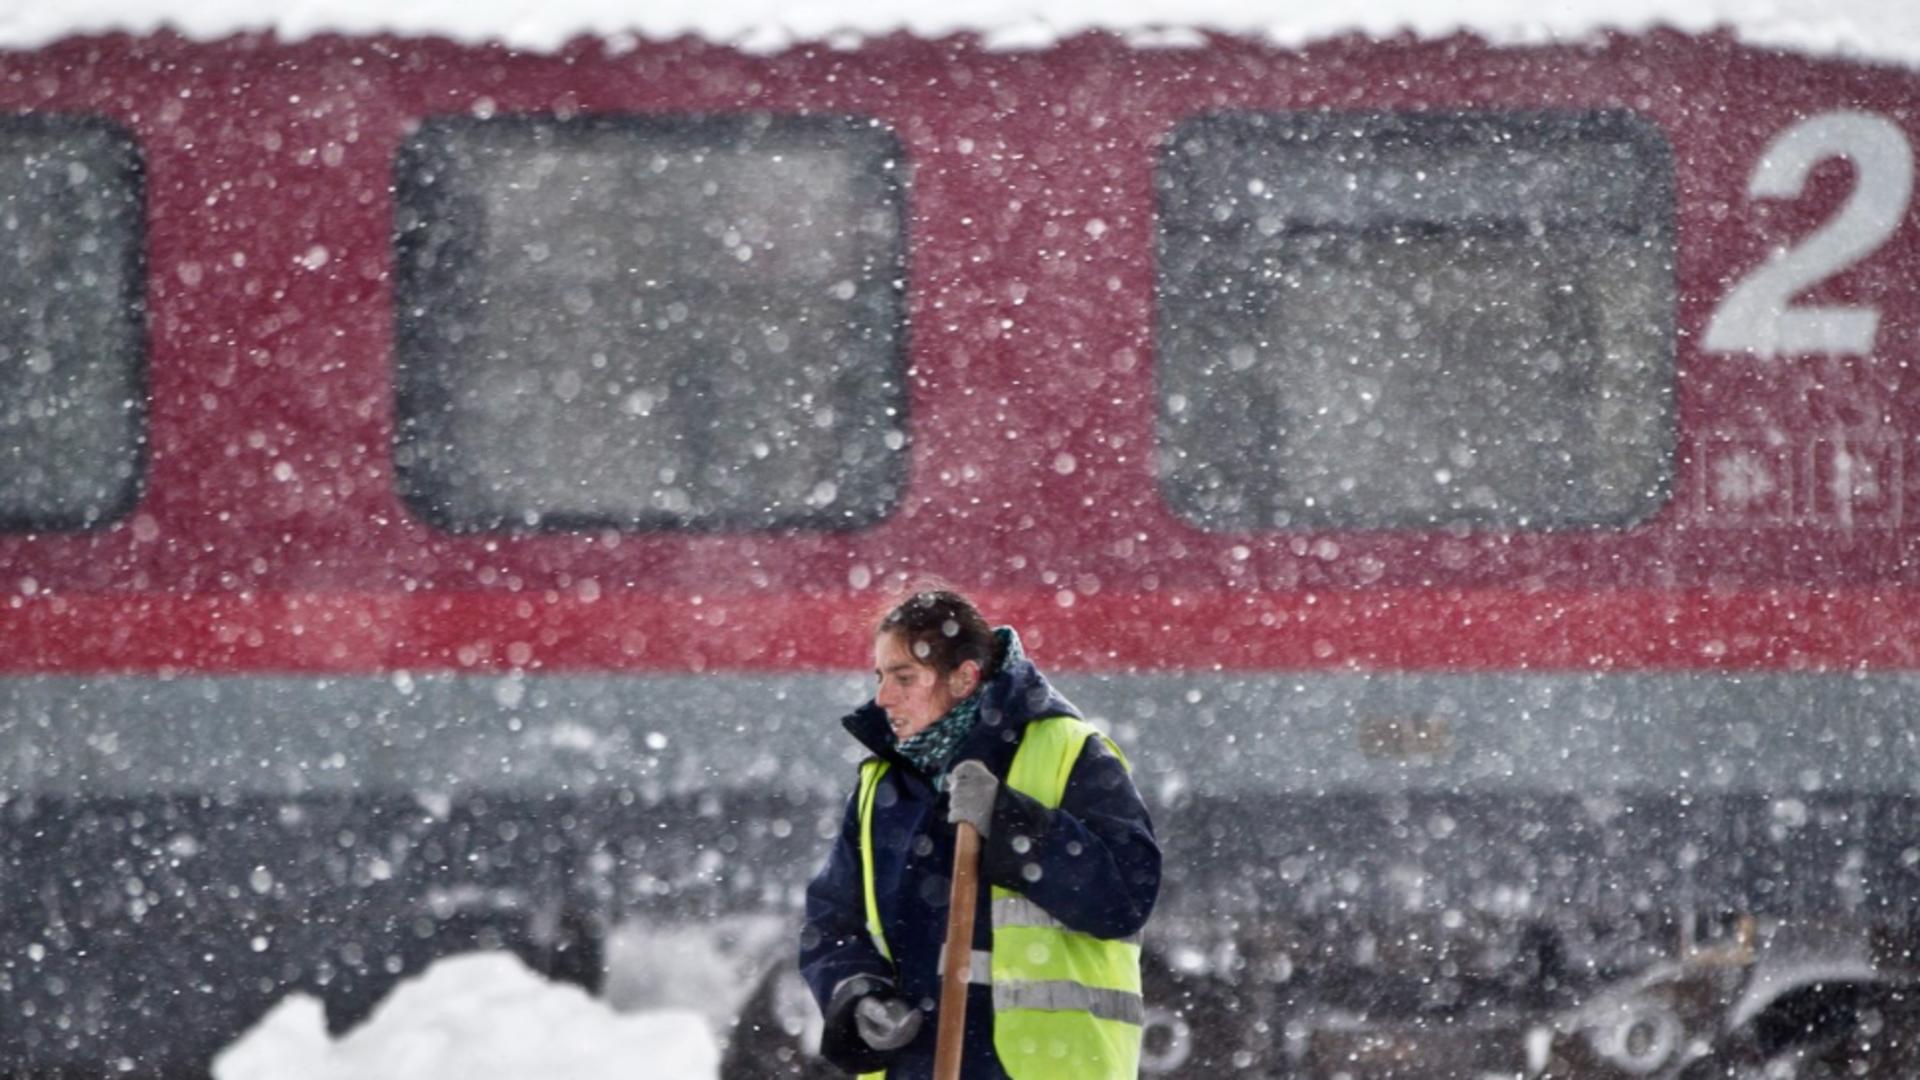 Alertă CFR Călători: Circulaţia a zeci de trenuri, suspendată duminică pe magistrala Bucureşti-Constanţa, din cauza vremii nefavorabile